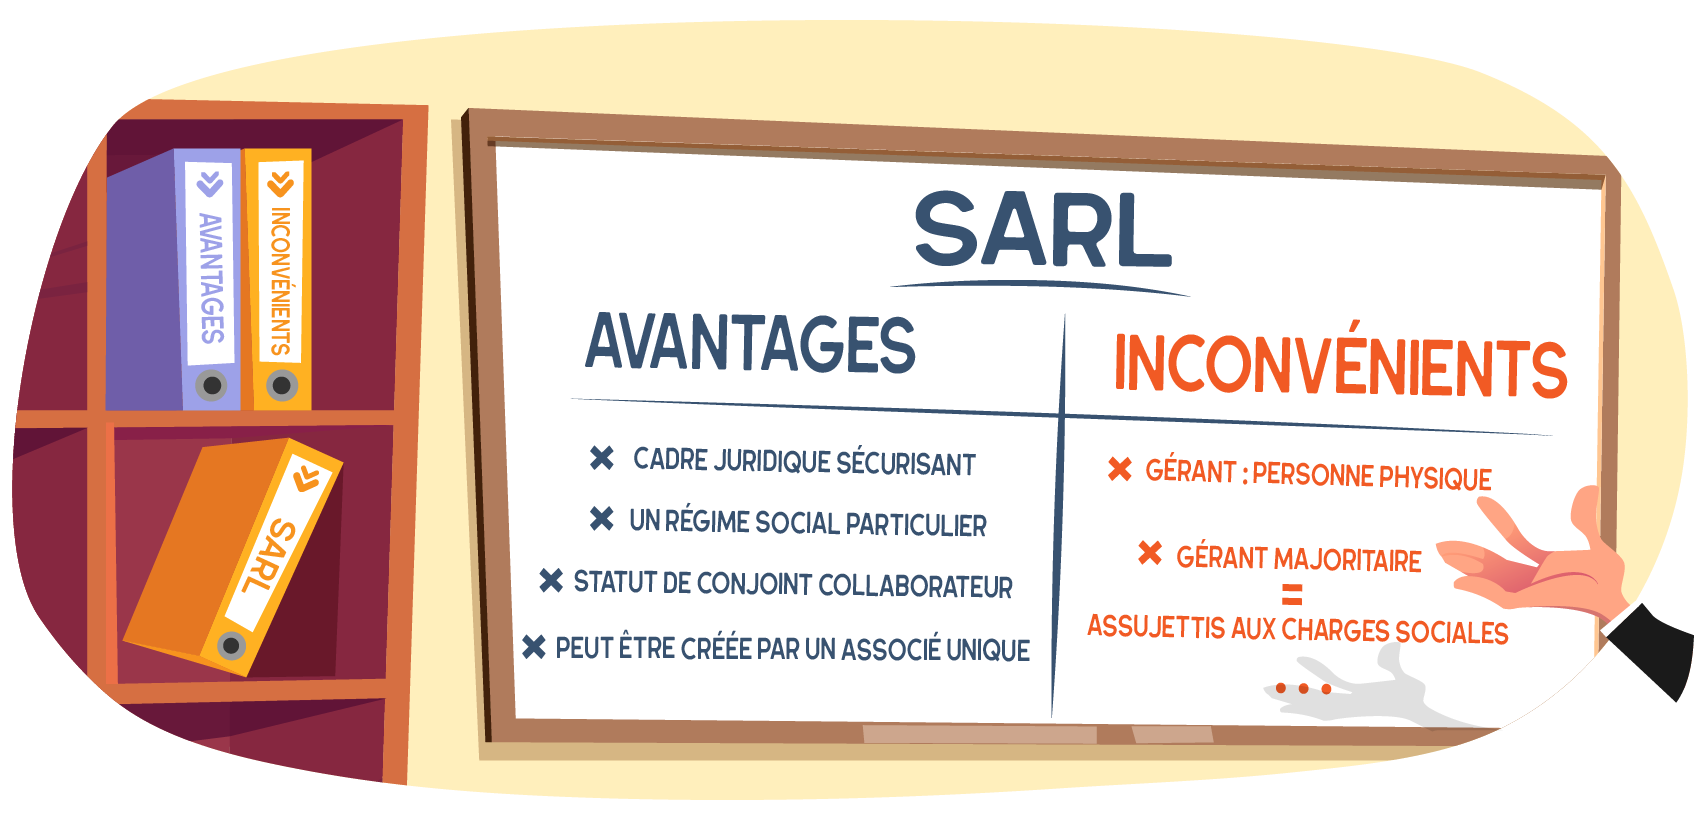 Avantages et inconvénients de la SARL - Article par ABC LIV.